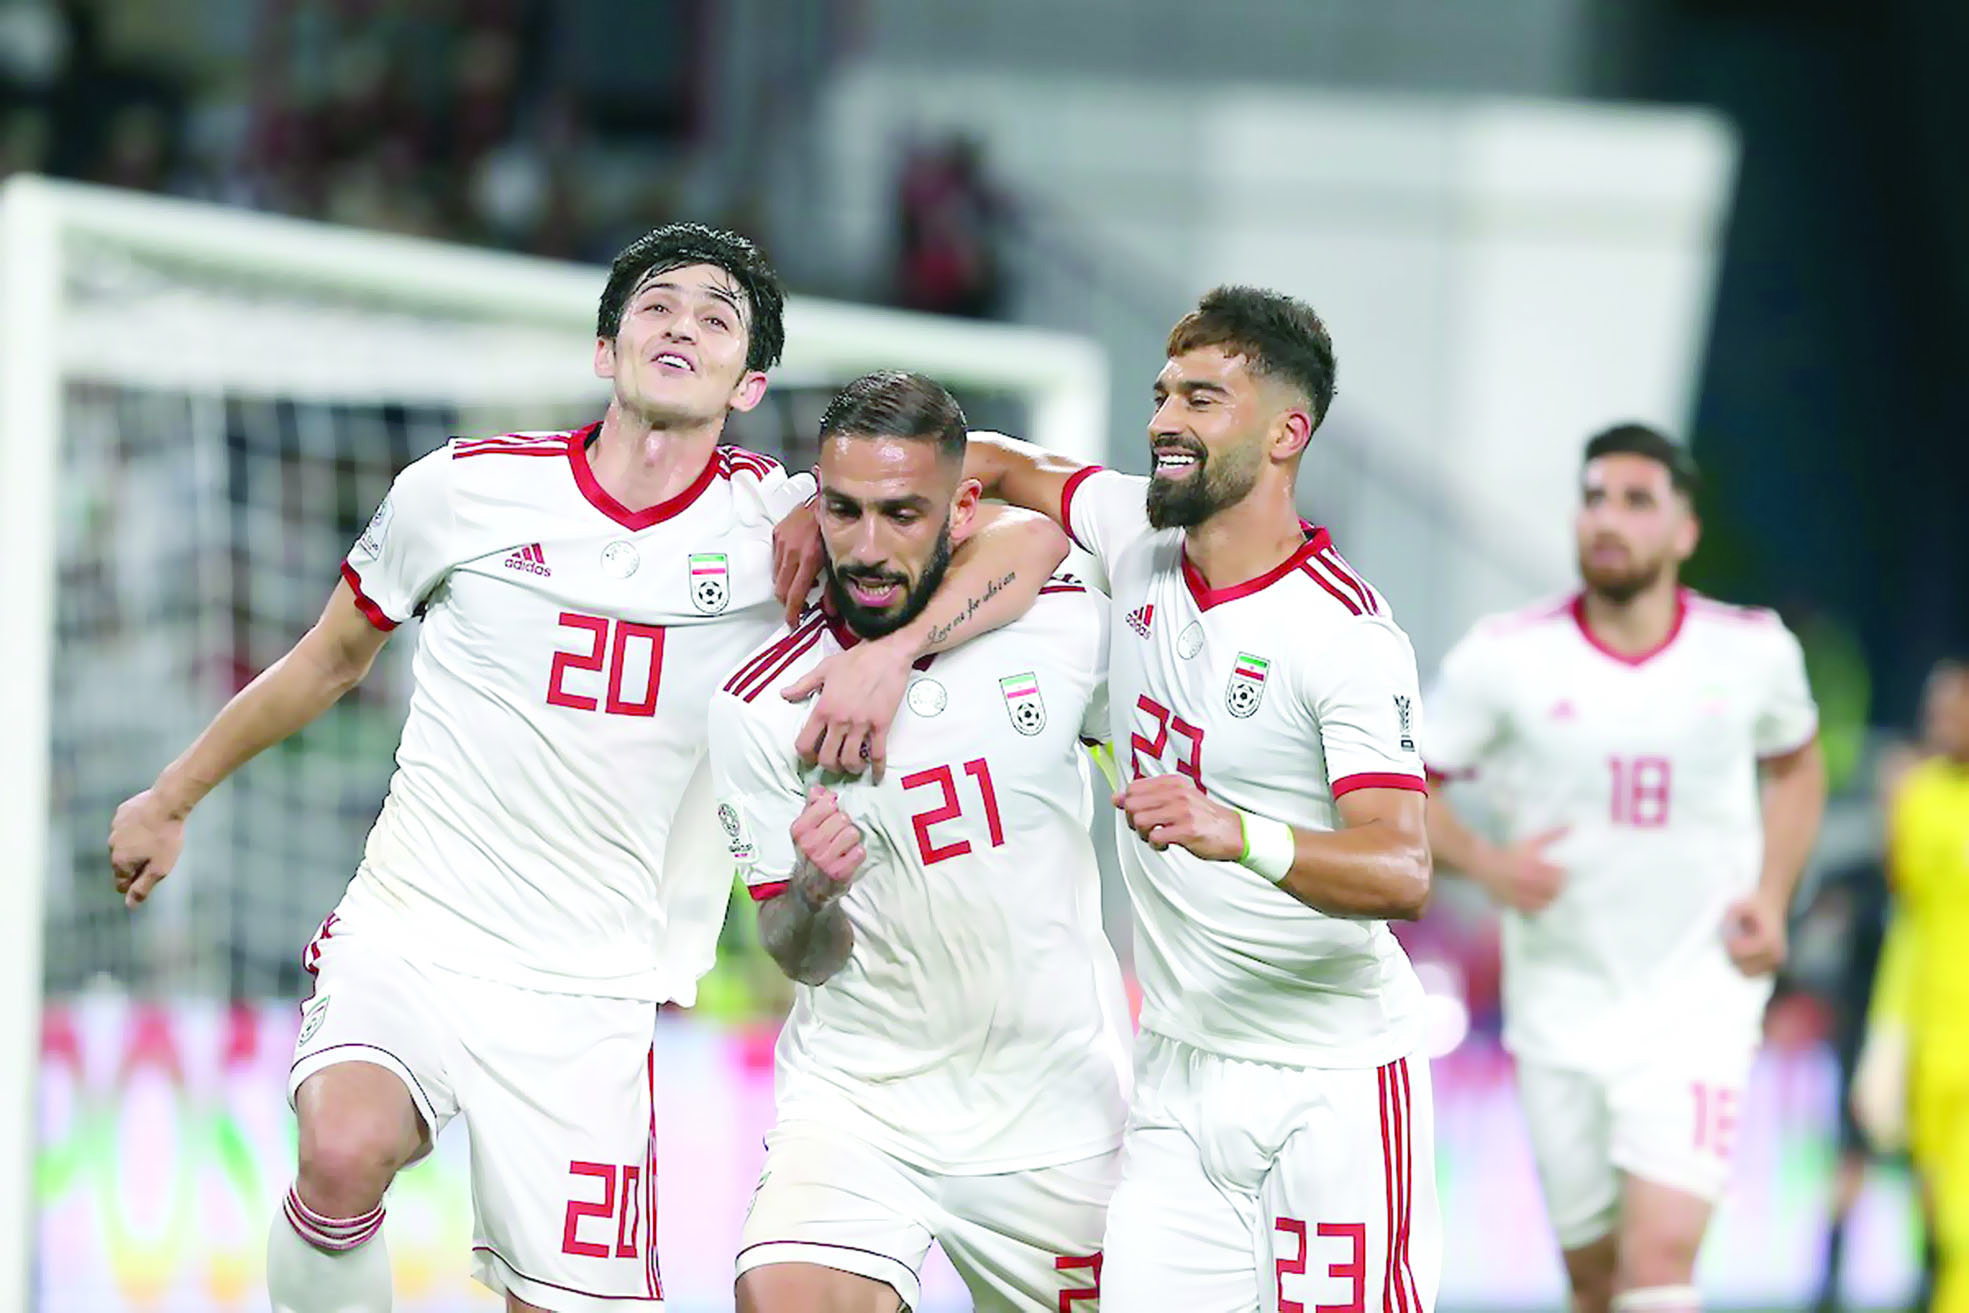 في ربع نهائي كأس آسيا
إيران تسعى لتخطي سور الصين